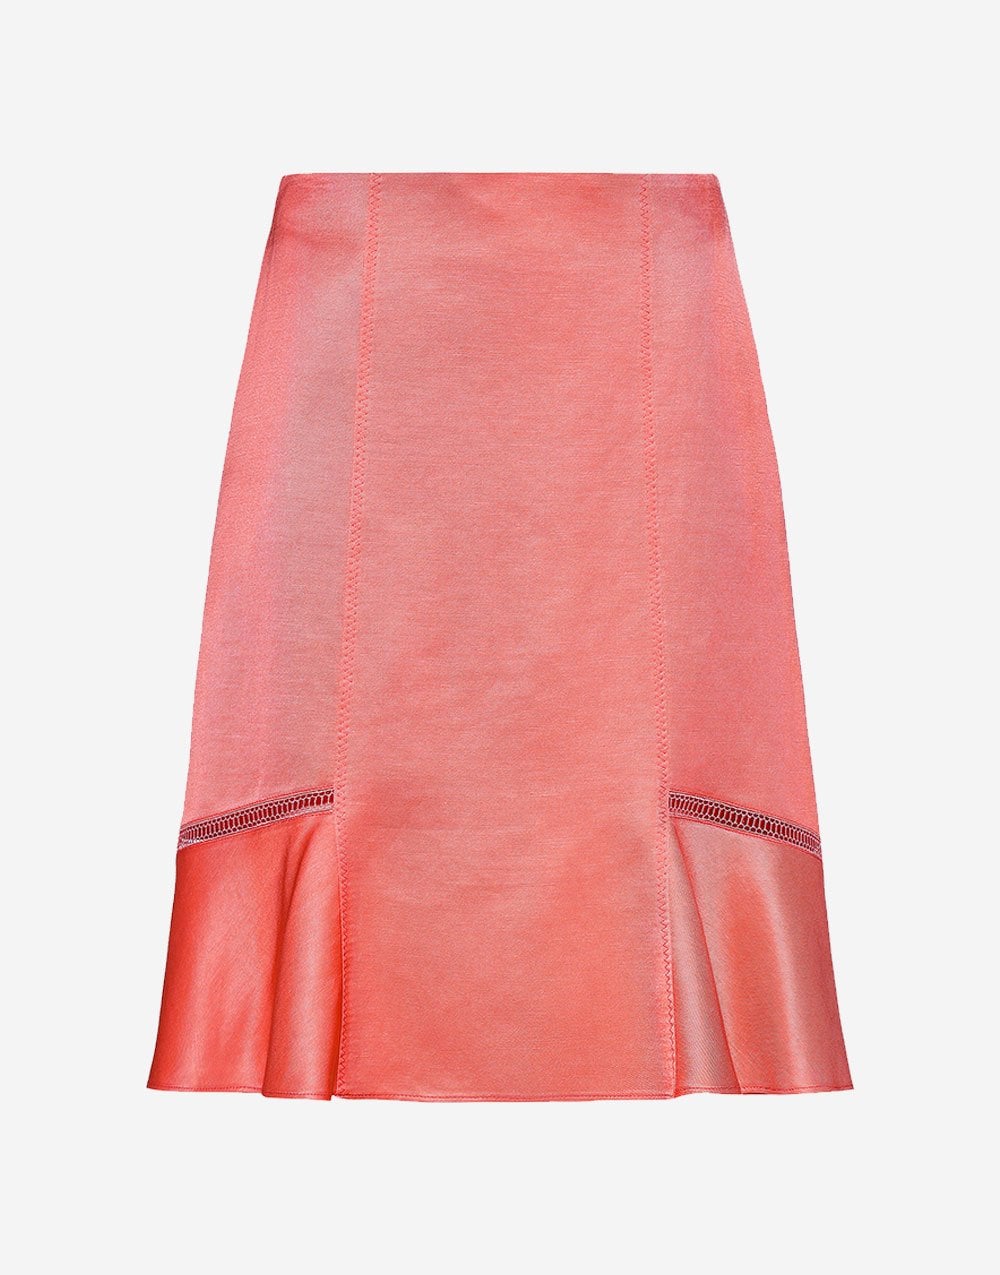 Boss Boss Vileina Ladder Stitch A Line Skirt Col: Coral Pink, Size: 12